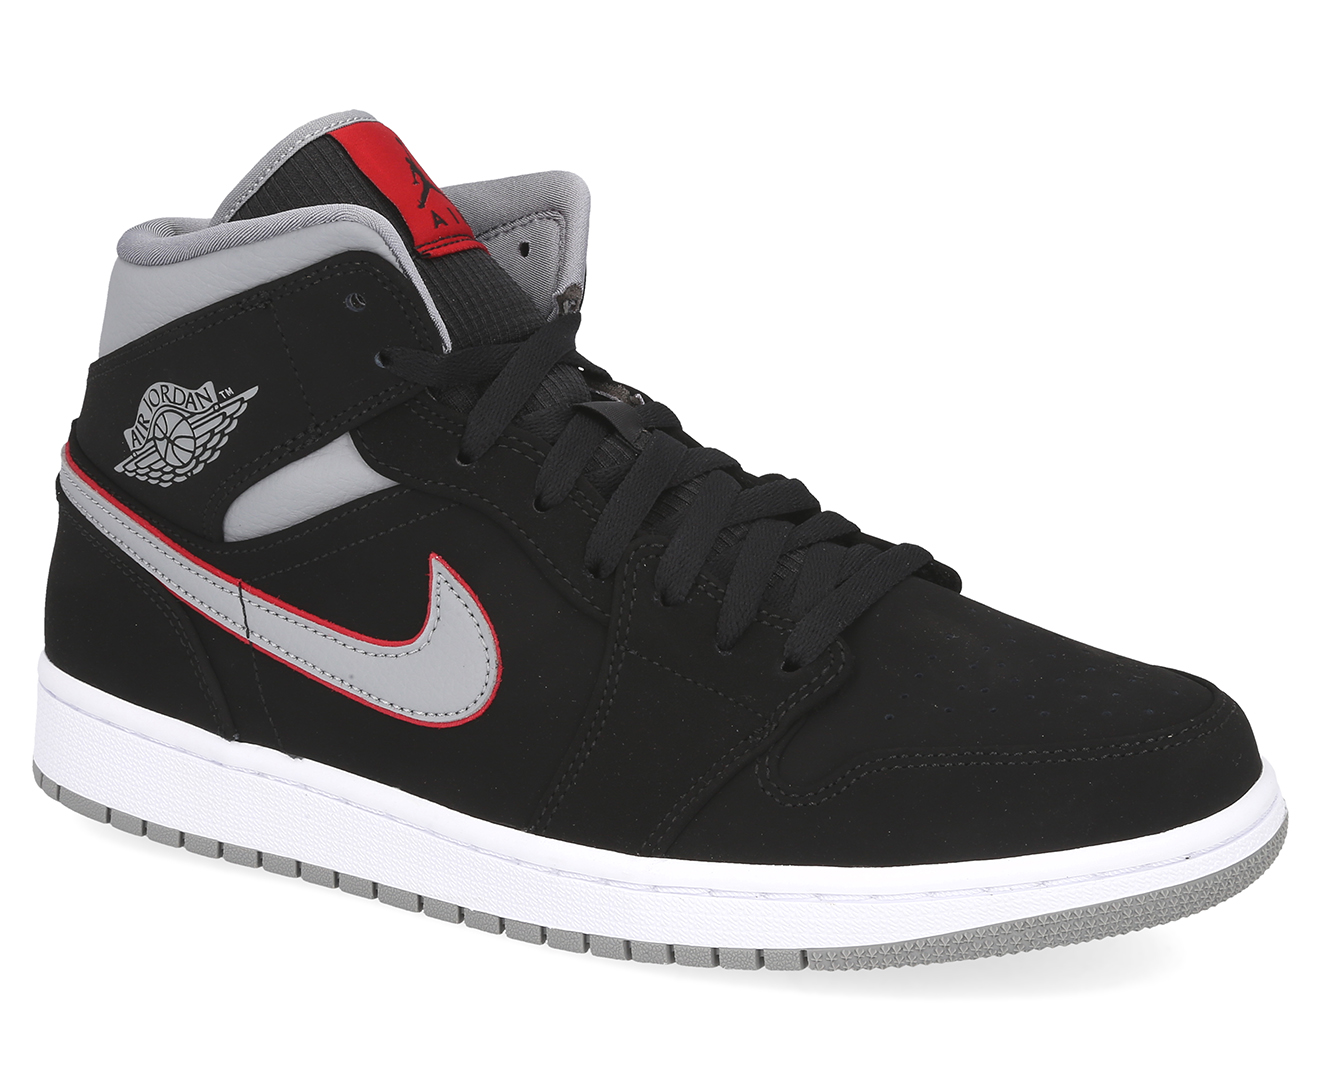 Nike Men's Air Jordan 1 Mid Shoe - Black/Particle Grey/White/Gym Red | Catch.com.au